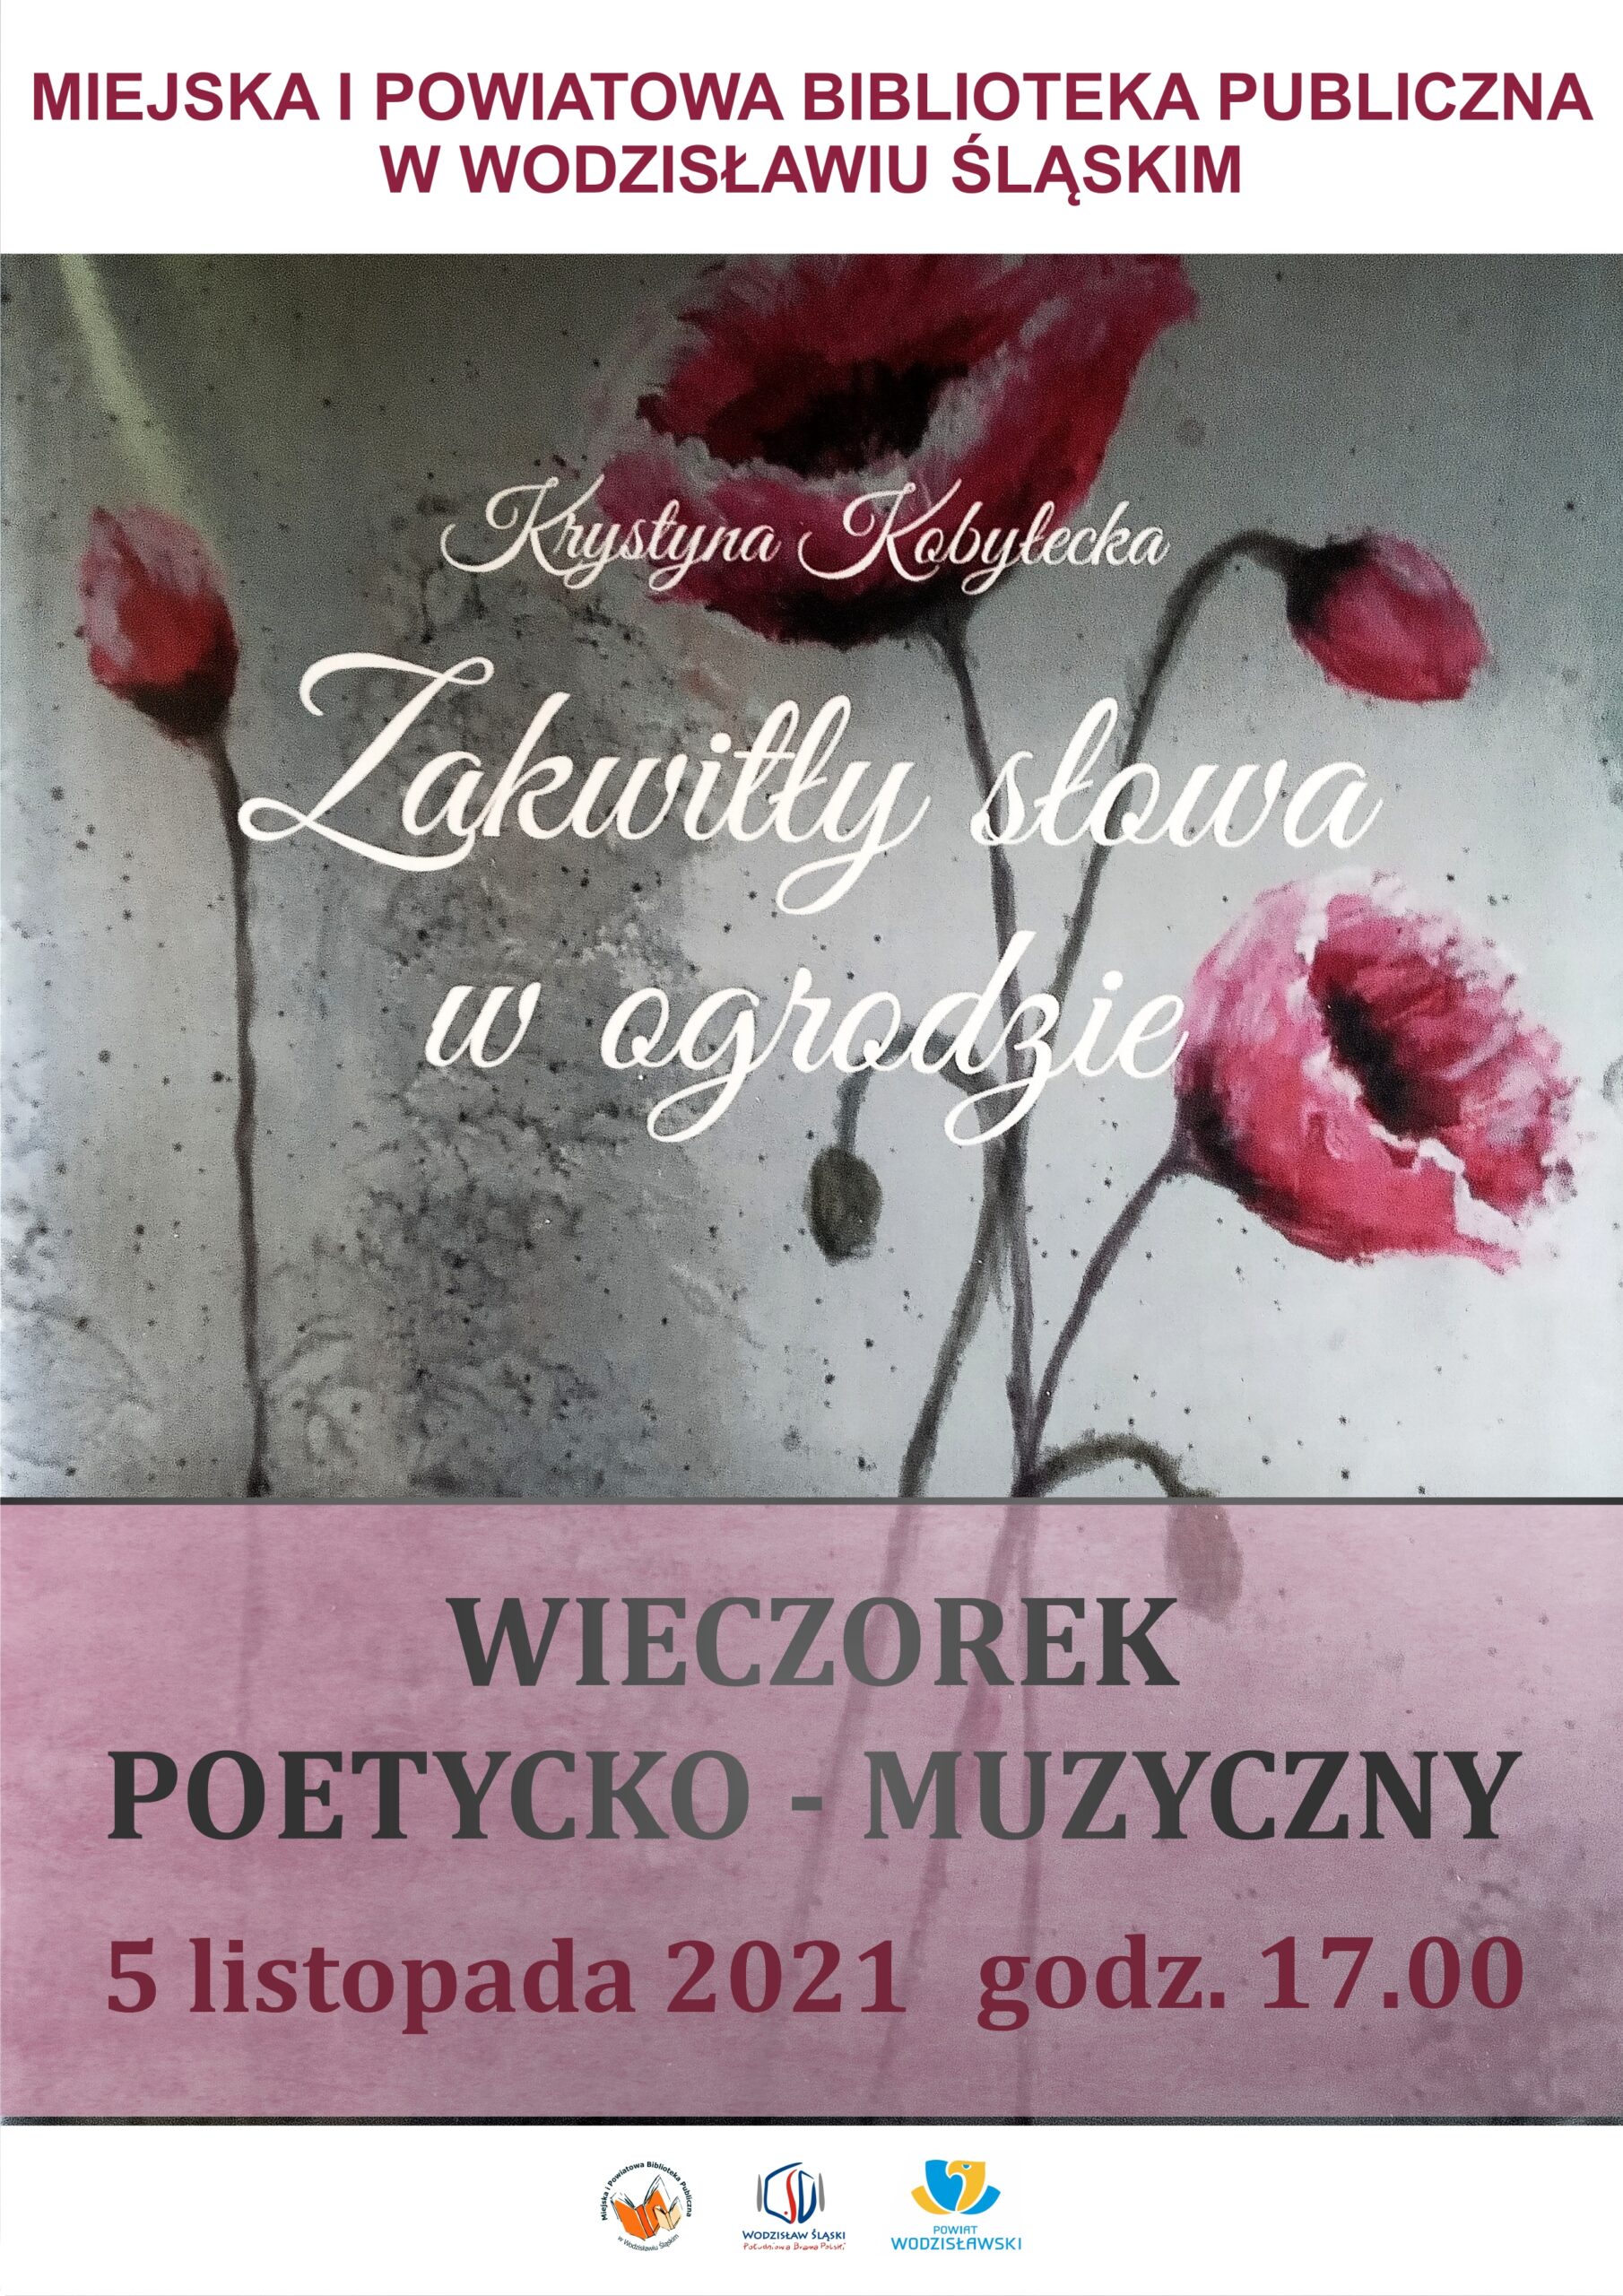 Krystyna Kobyłecka - Zakwitły słowa w ogrodzie - Wieczorek poetycko-muzyczny - 5 listopada 2021, godz. 17.00